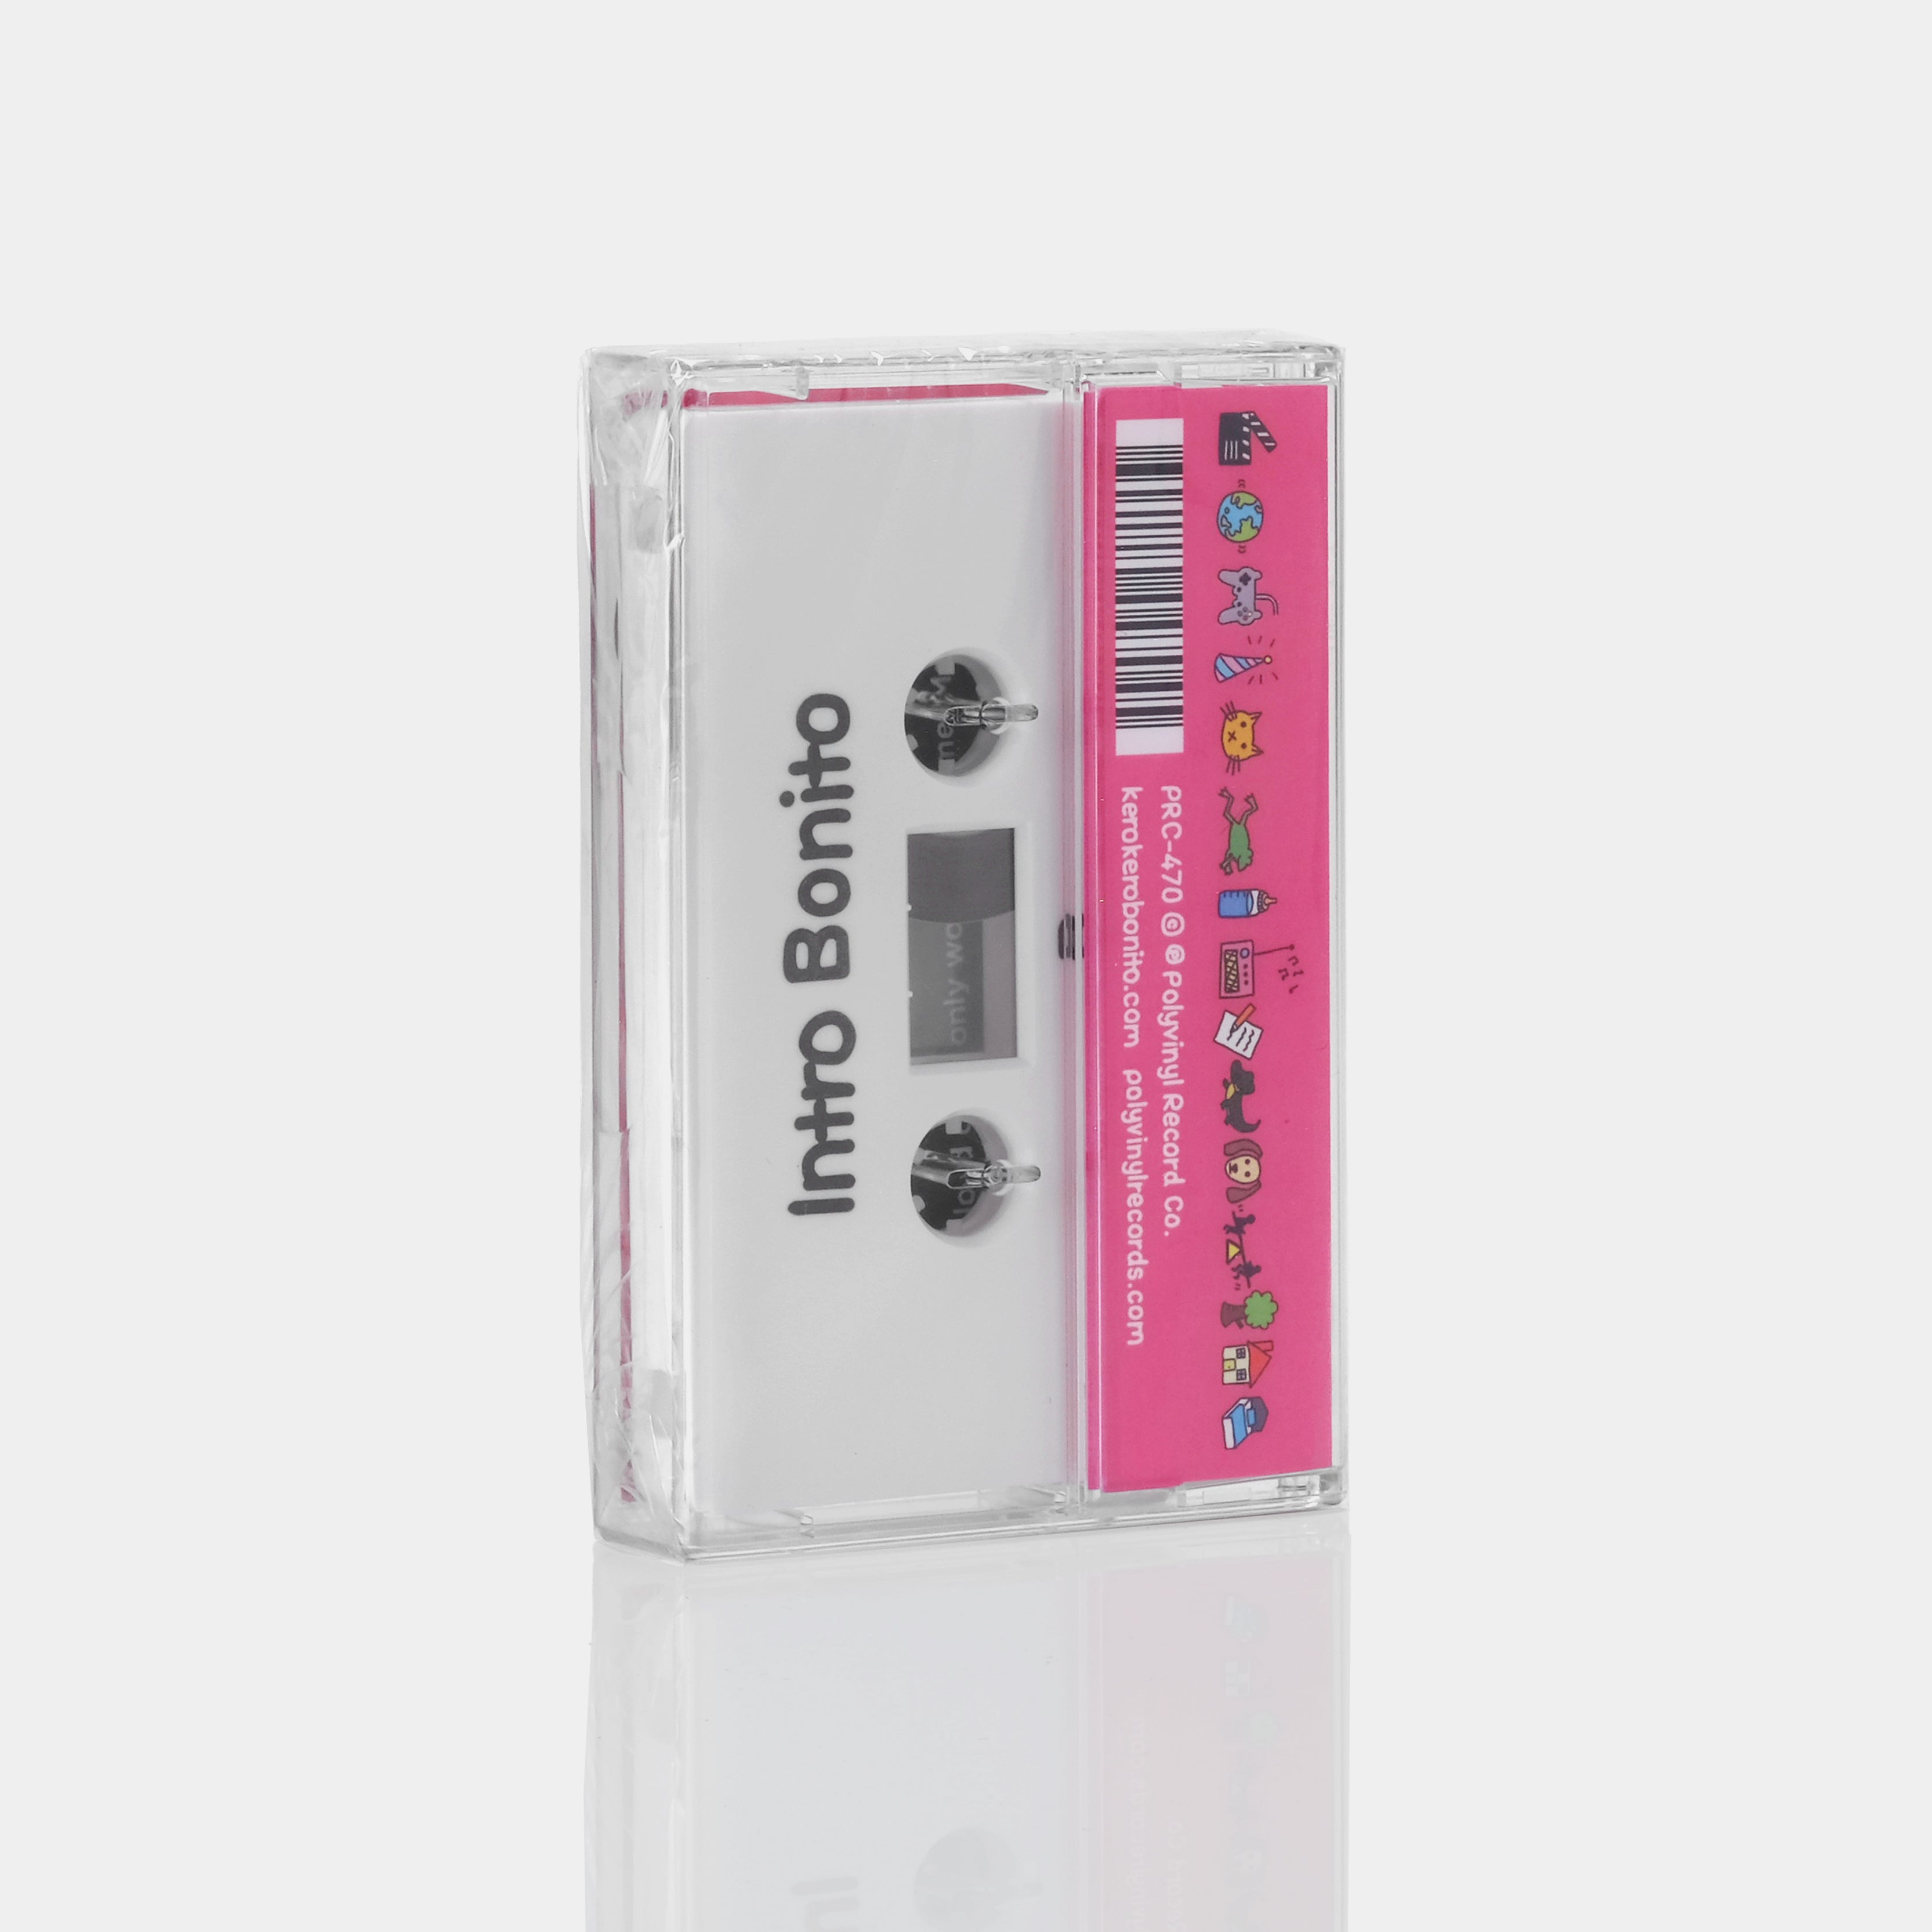 Kero Kero Bonito - Intro Bonito Cassette Tape